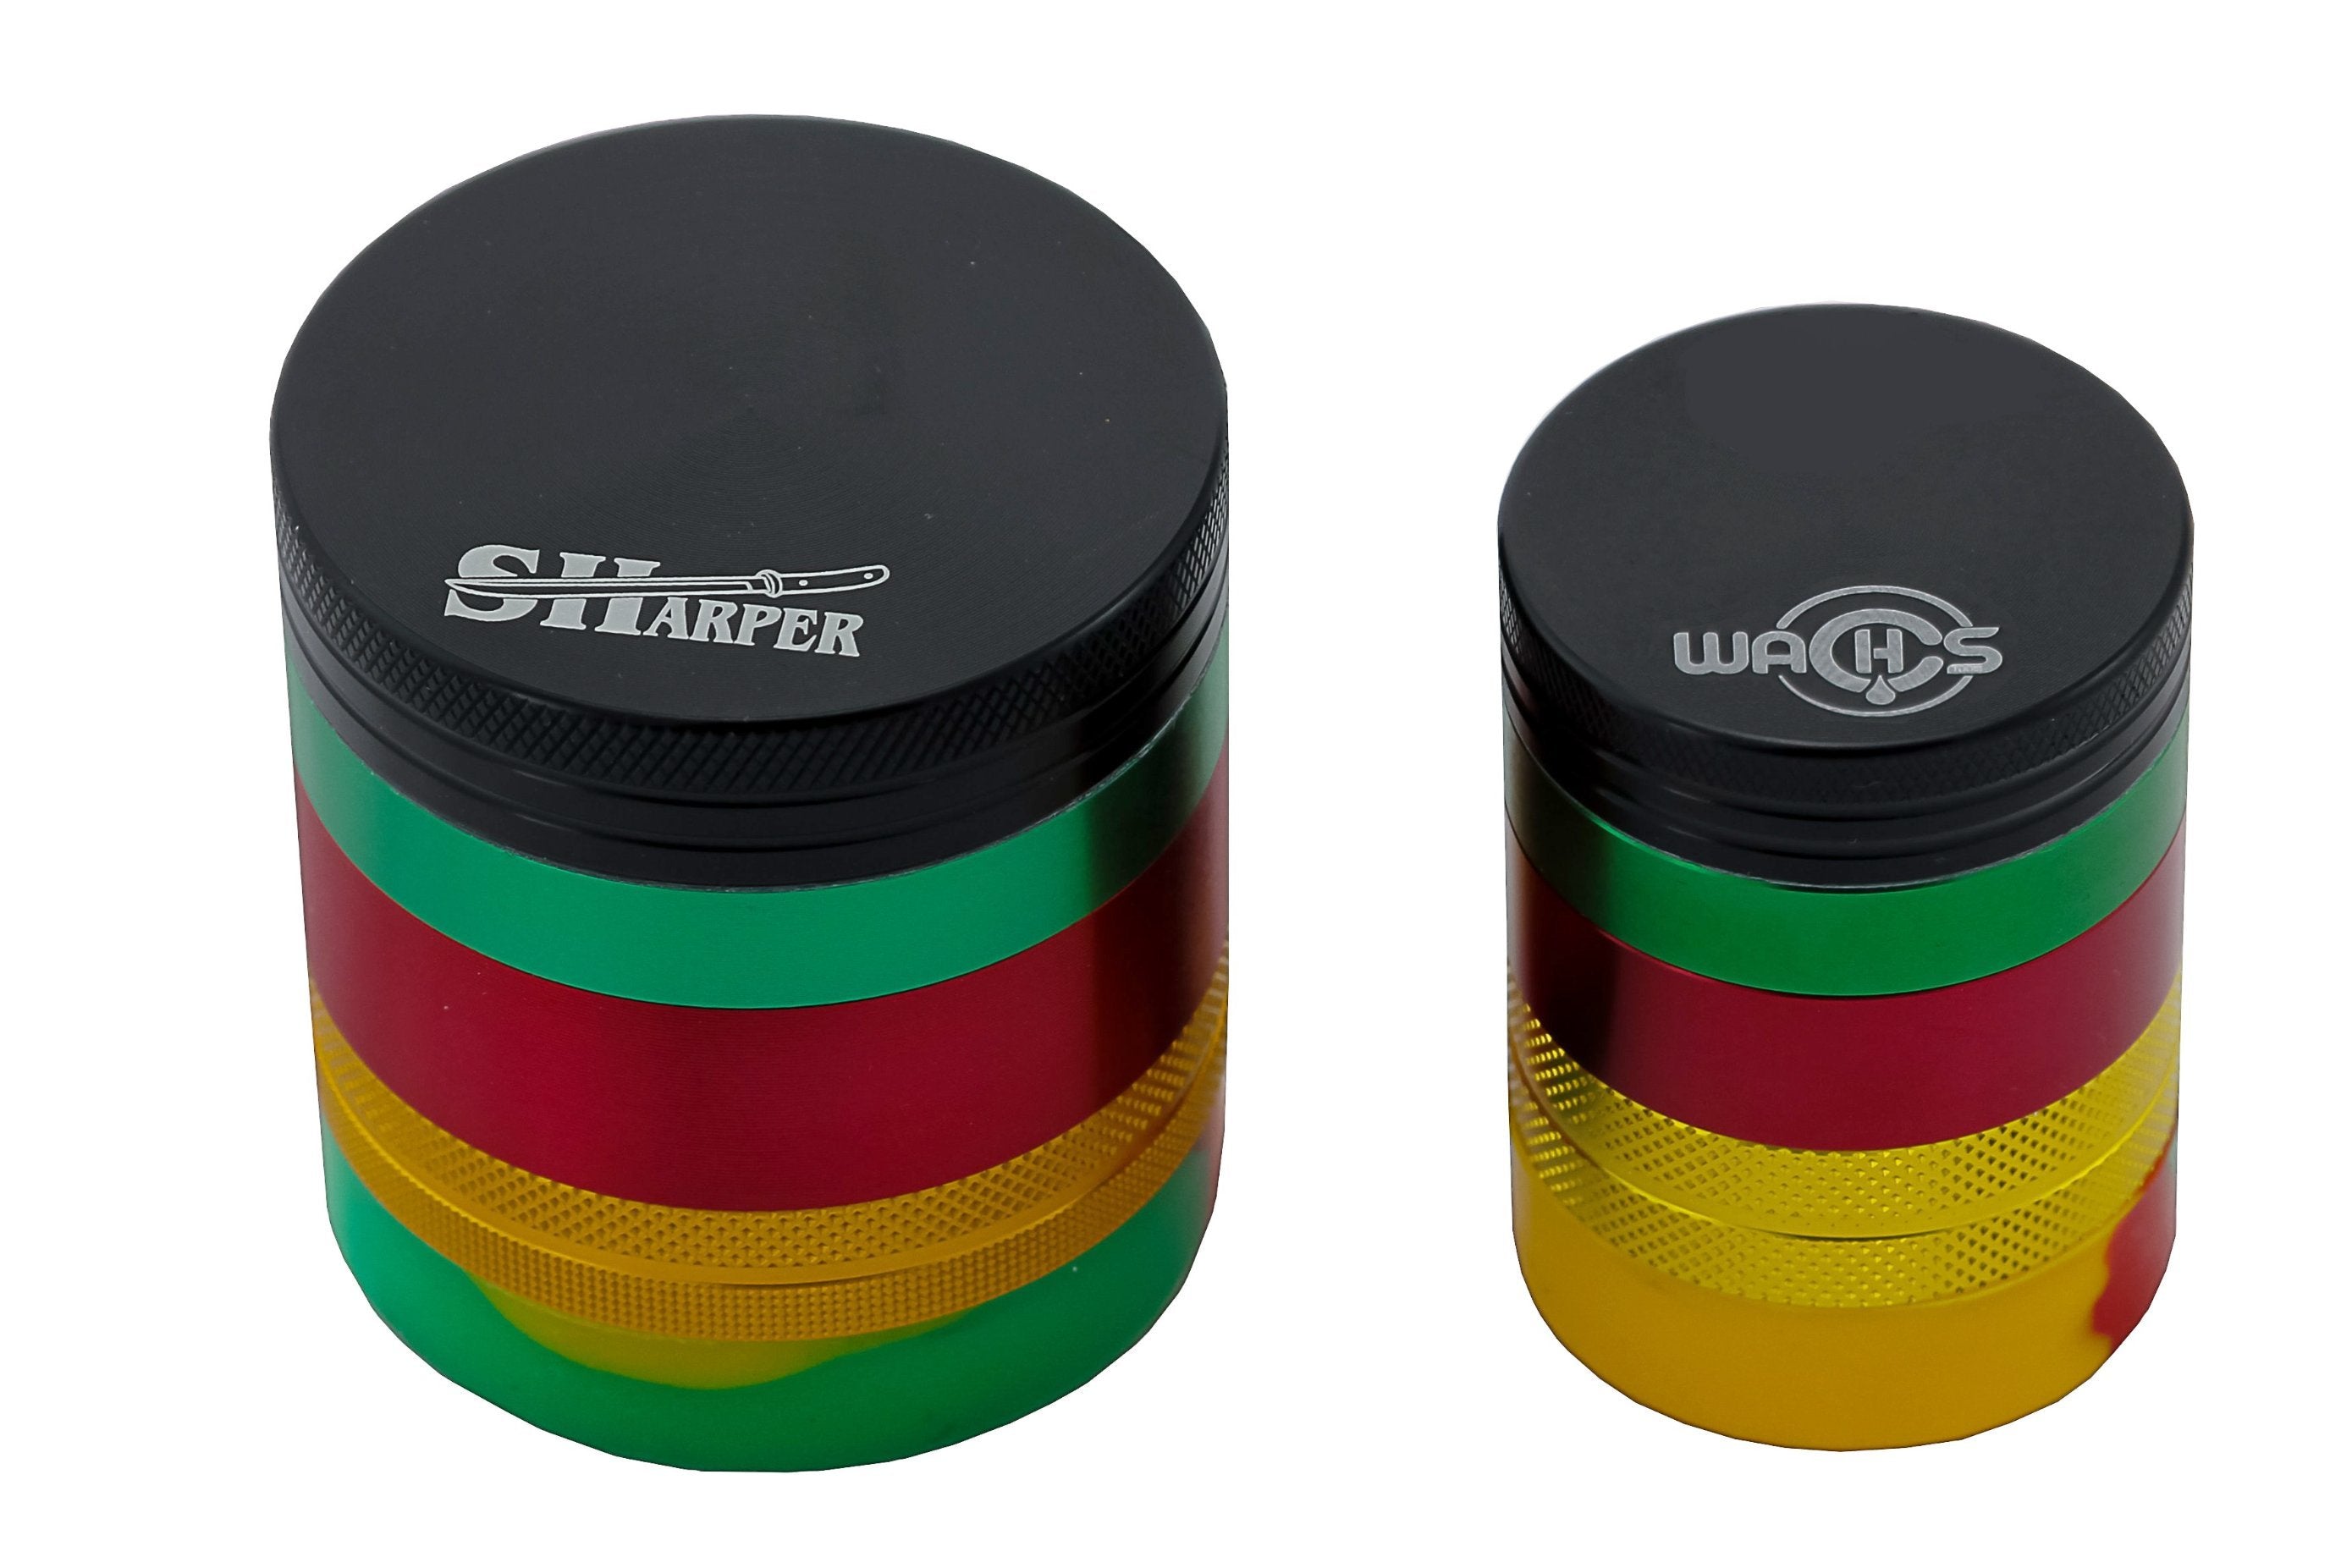 Sharper Grinder w/ Silicon Jar - (1.5")(38mm) 4 piece Sharper 